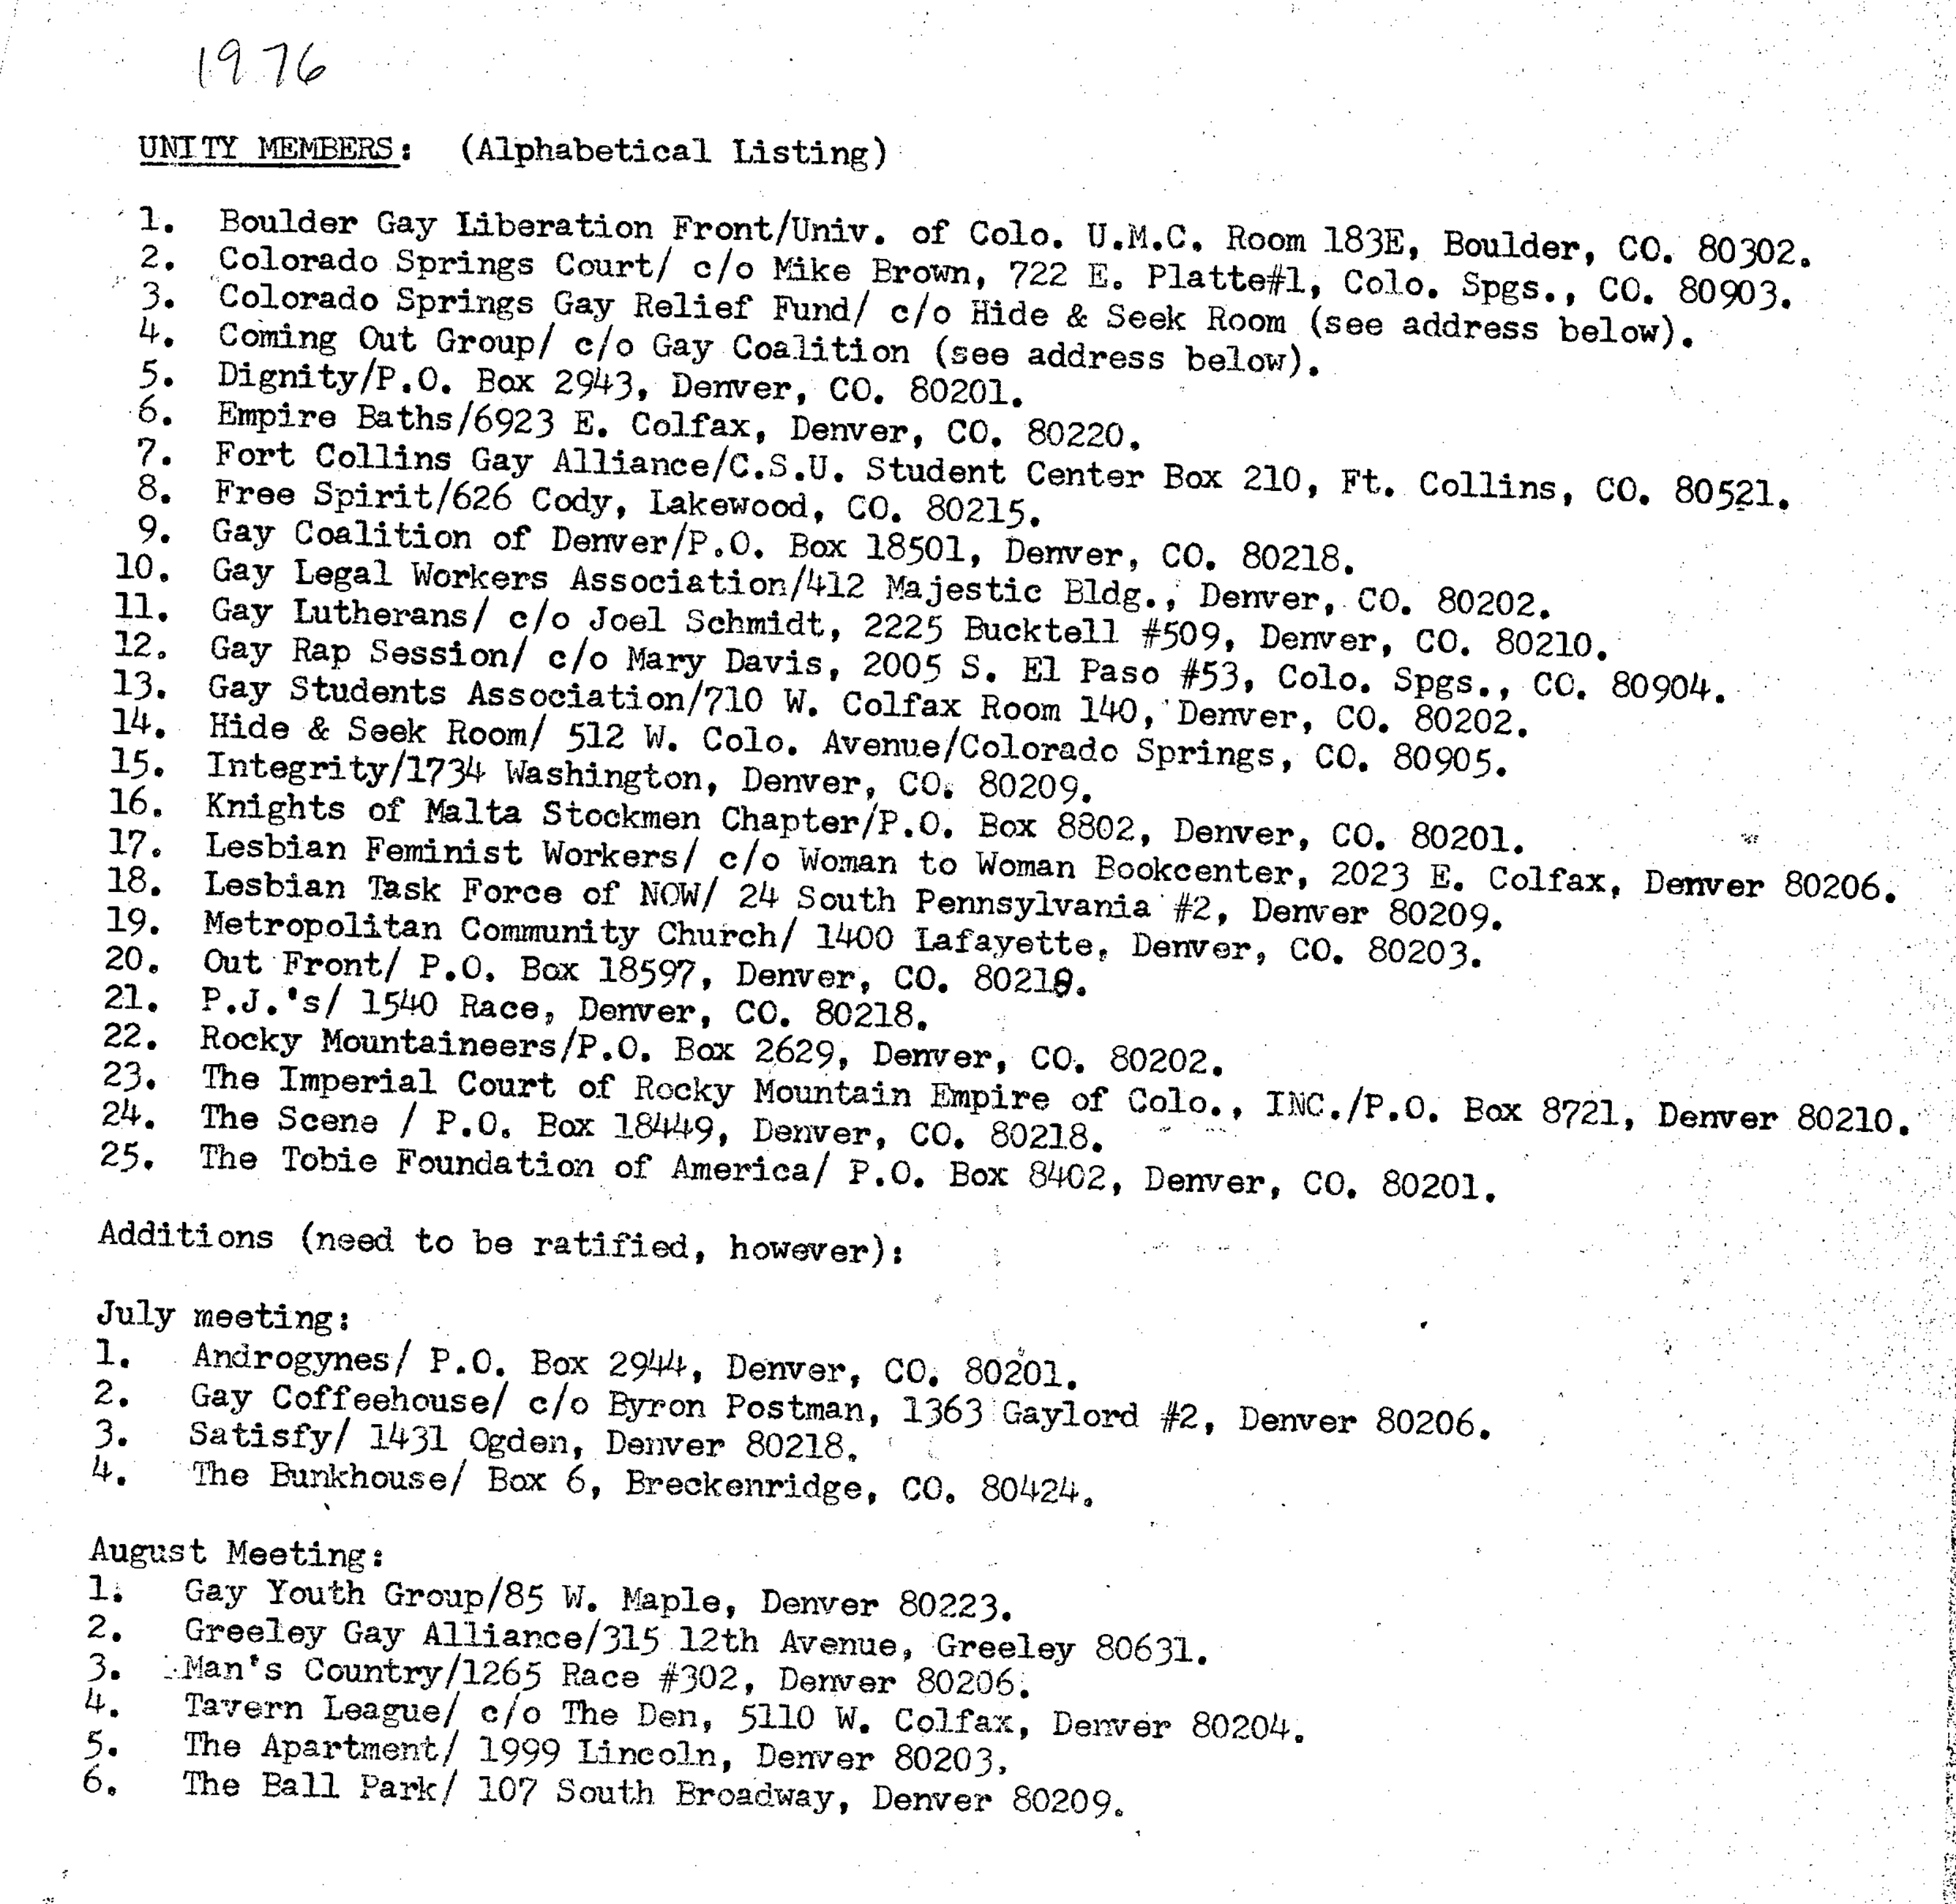 List of Unity membership in 1976. 